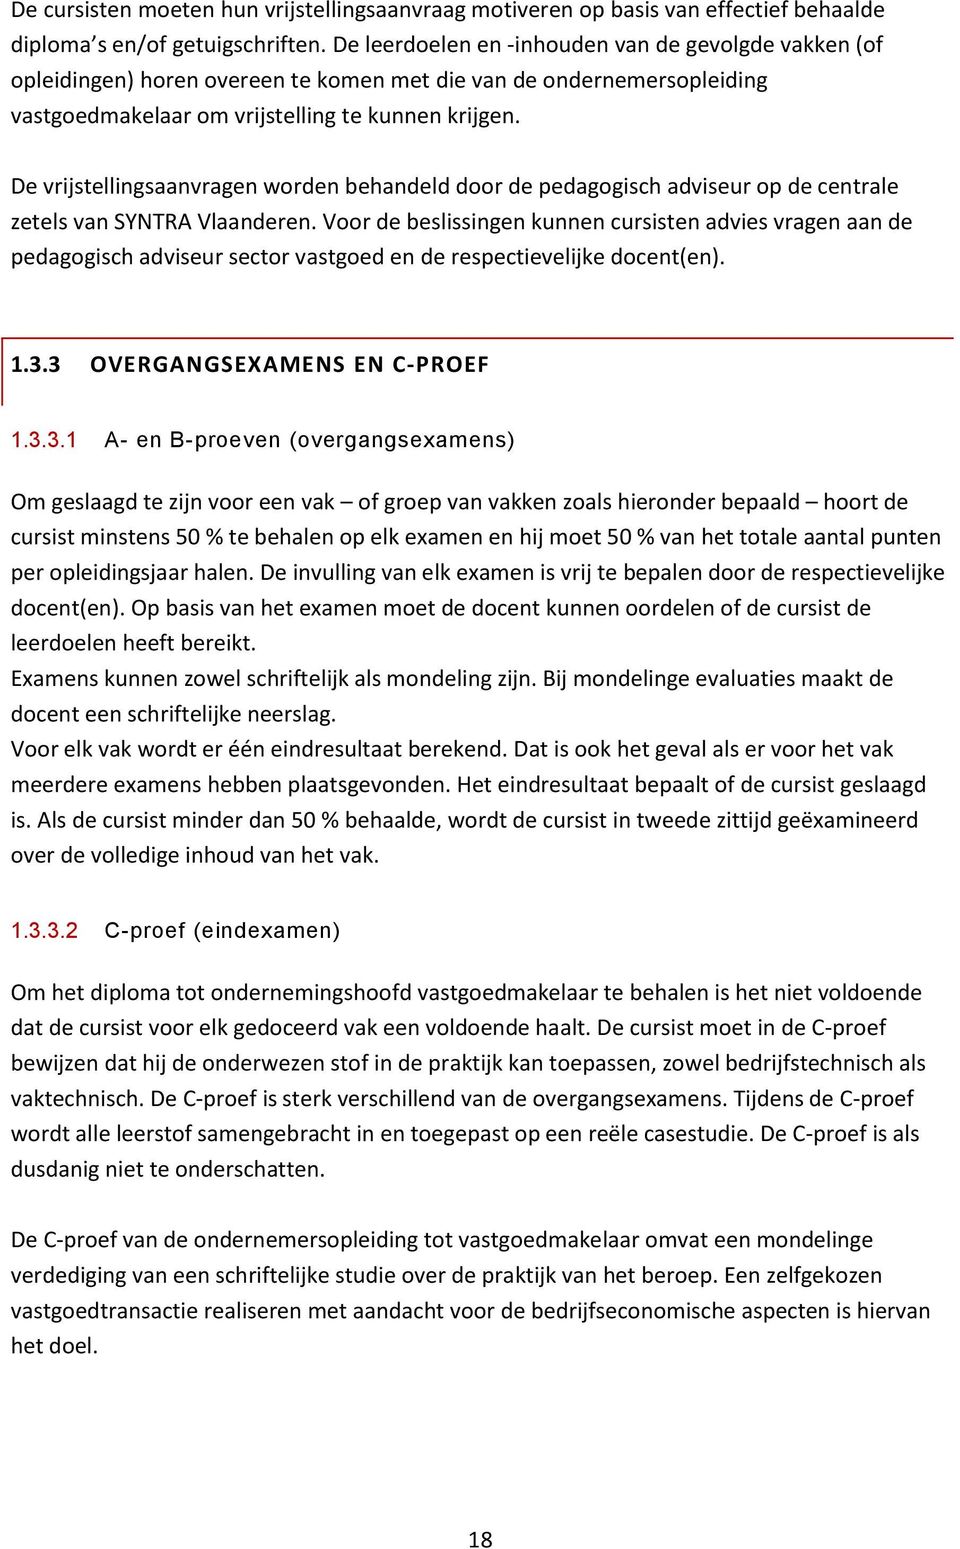 De vrijstellingsaanvragen worden behandeld door de pedagogisch adviseur op de centrale zetels van SYNTRA Vlaanderen.